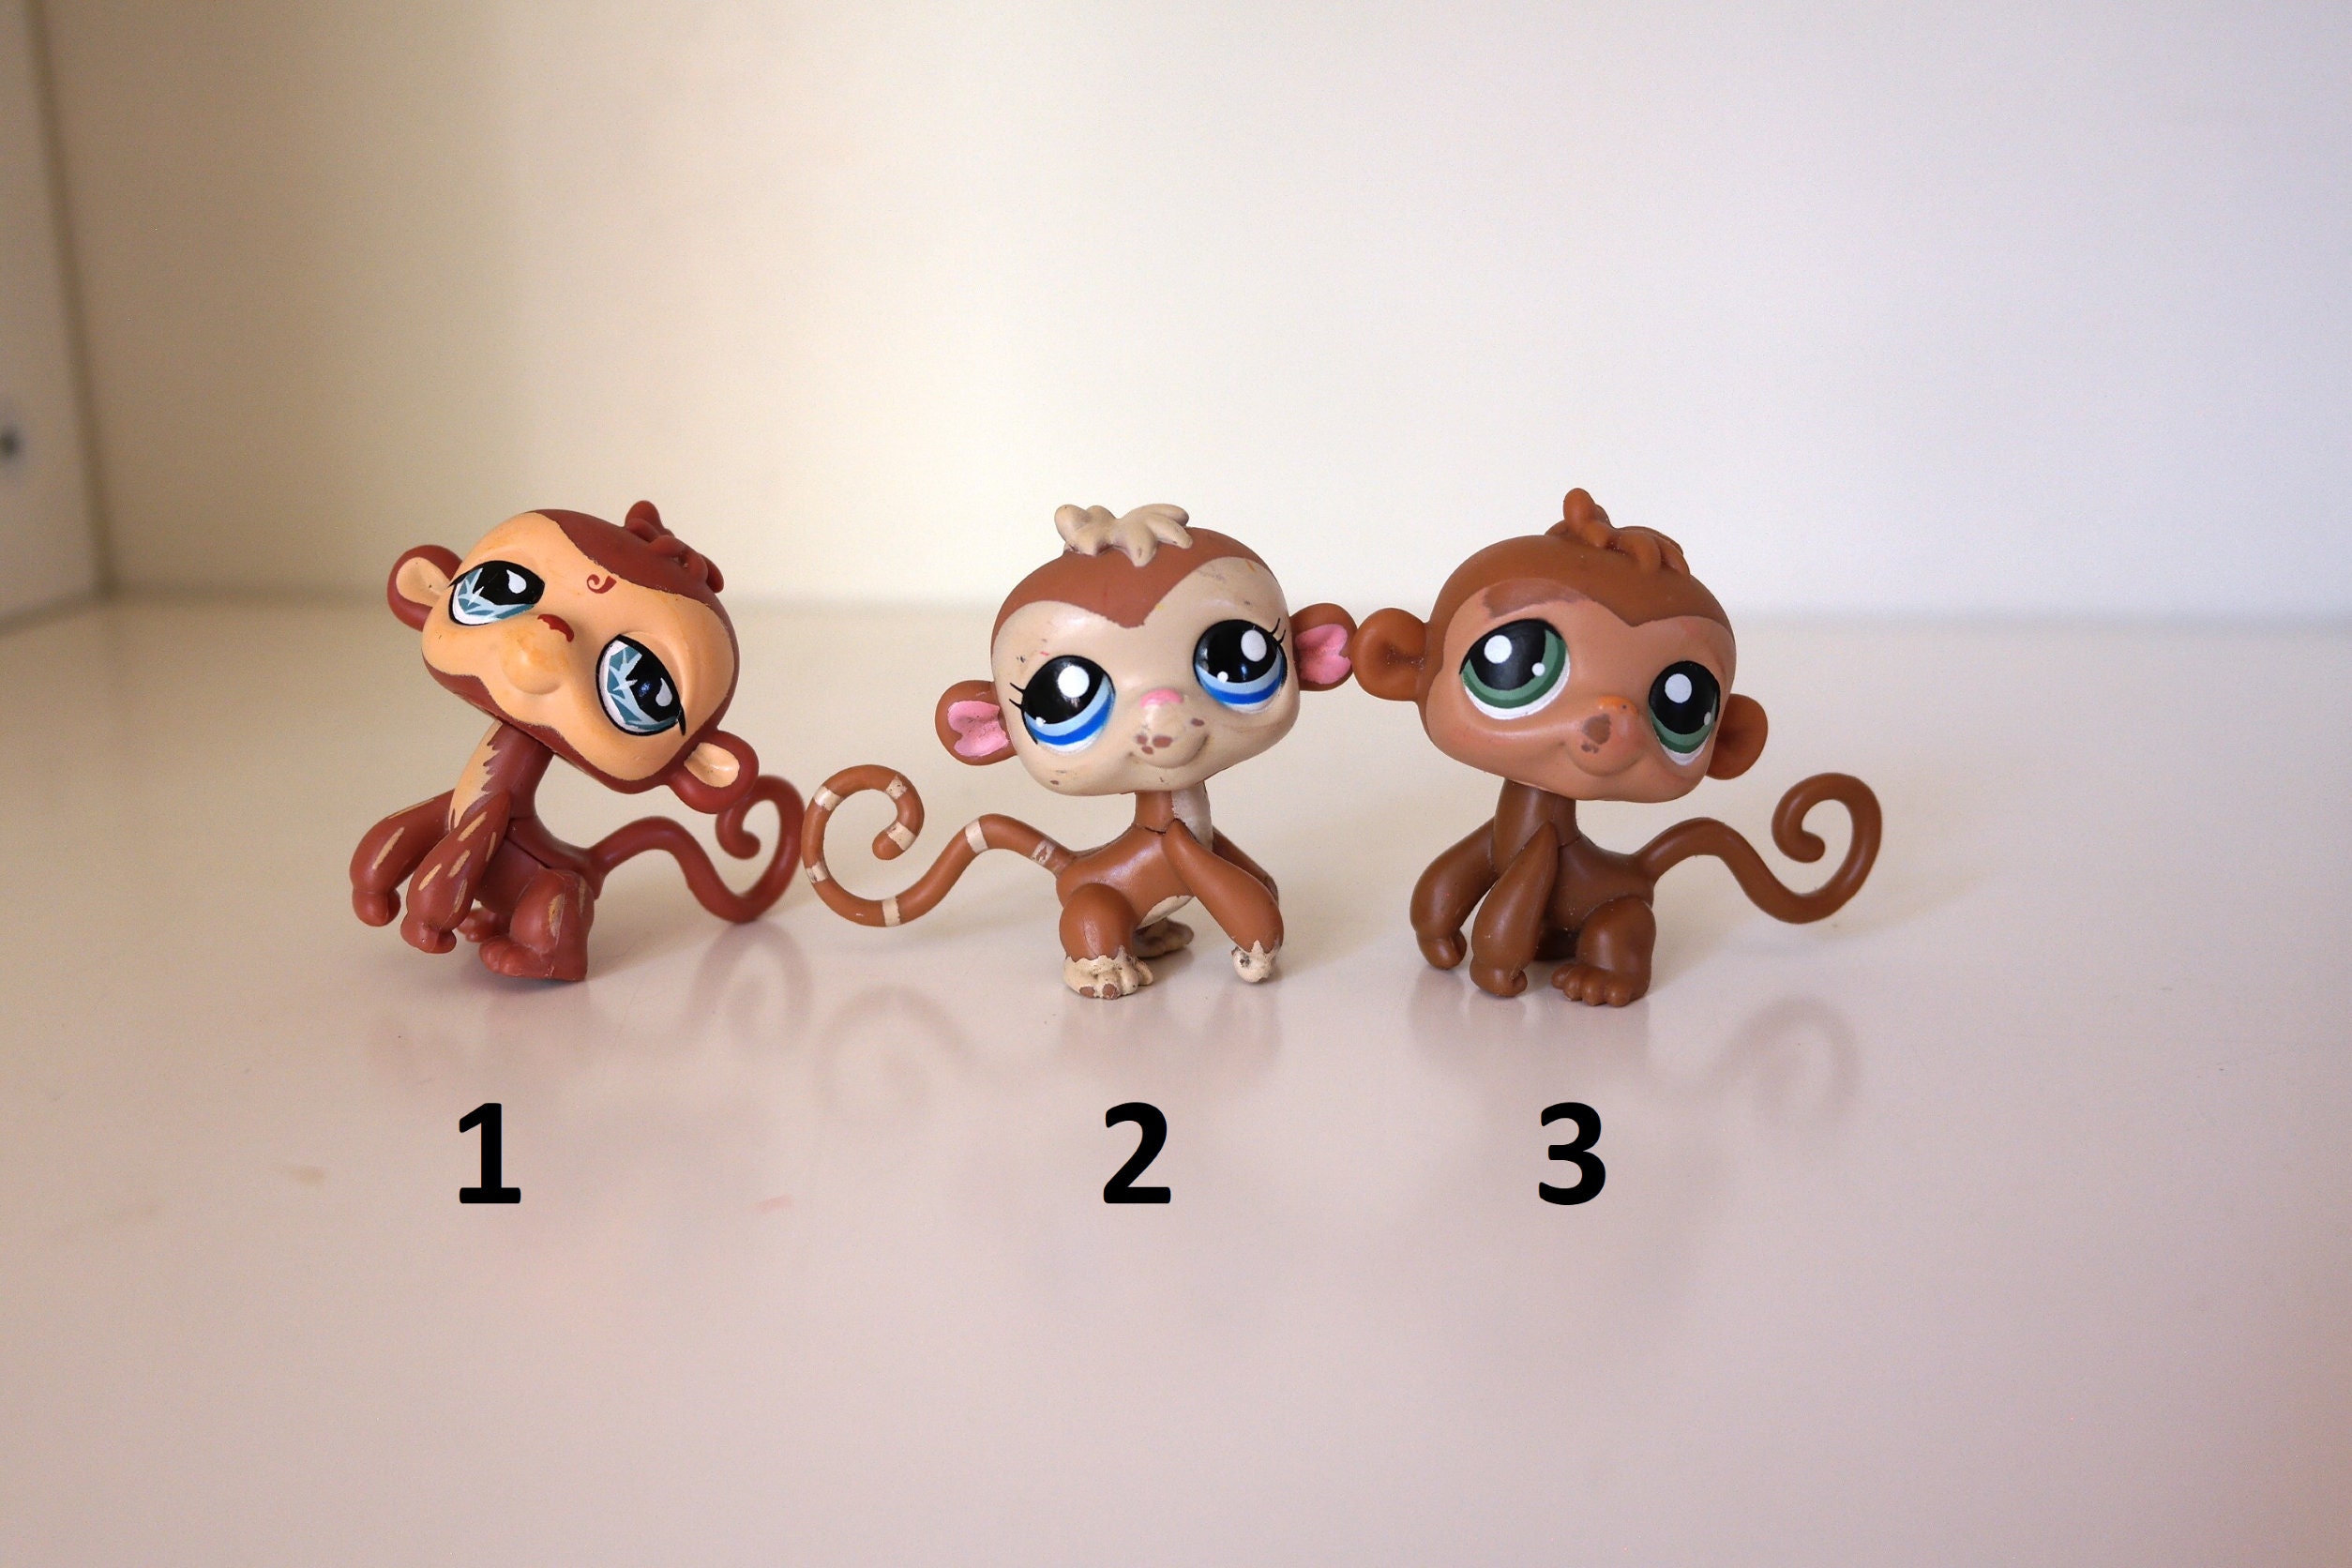 Littlest Pet Shop Monkey, Apes, Orangutan You Choose. Authentic Hasbro LPS  